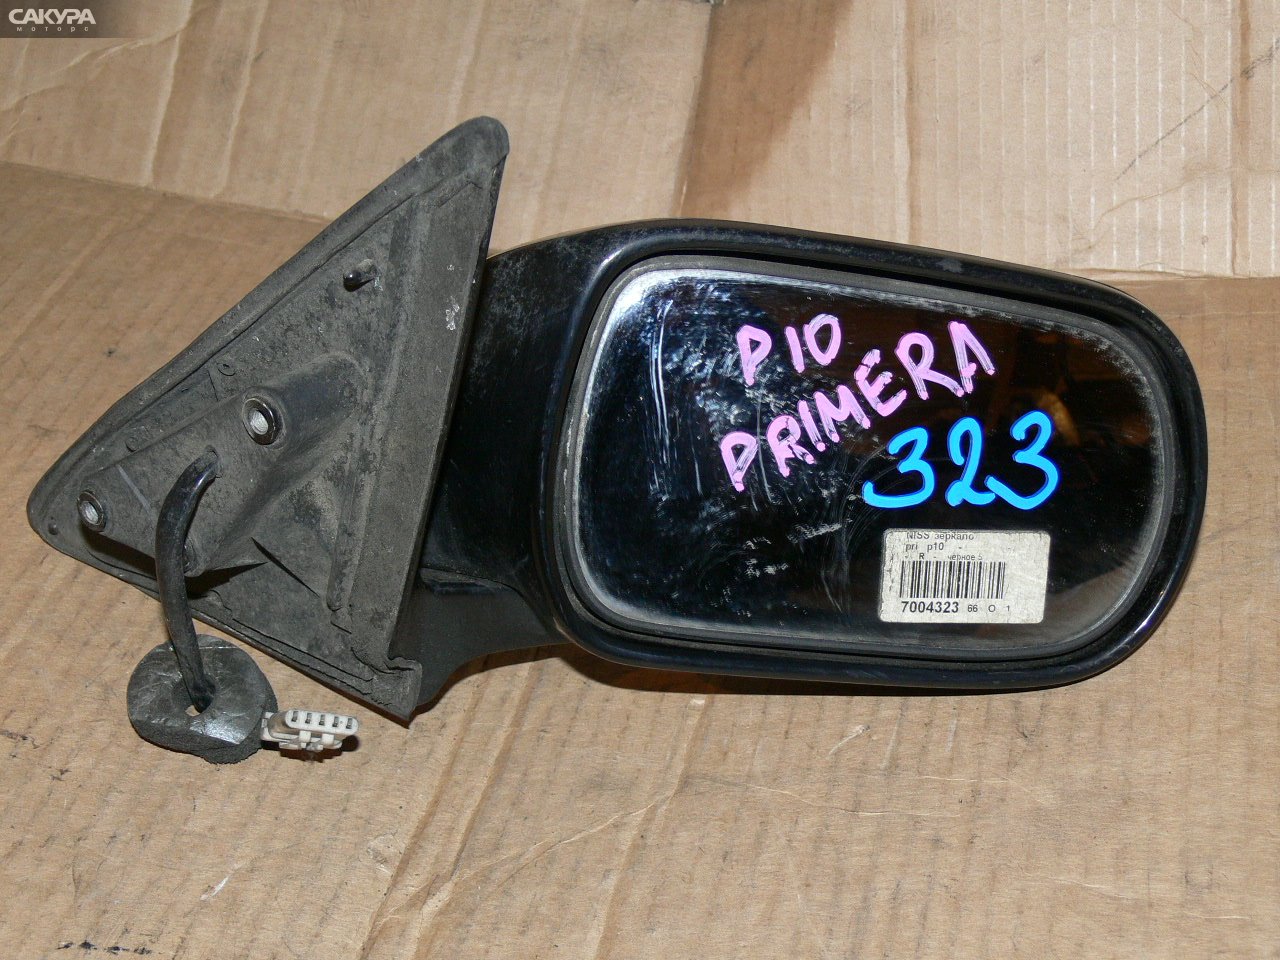 Зеркало боковое правое Nissan Primera P10: купить в Сакура Иркутск.